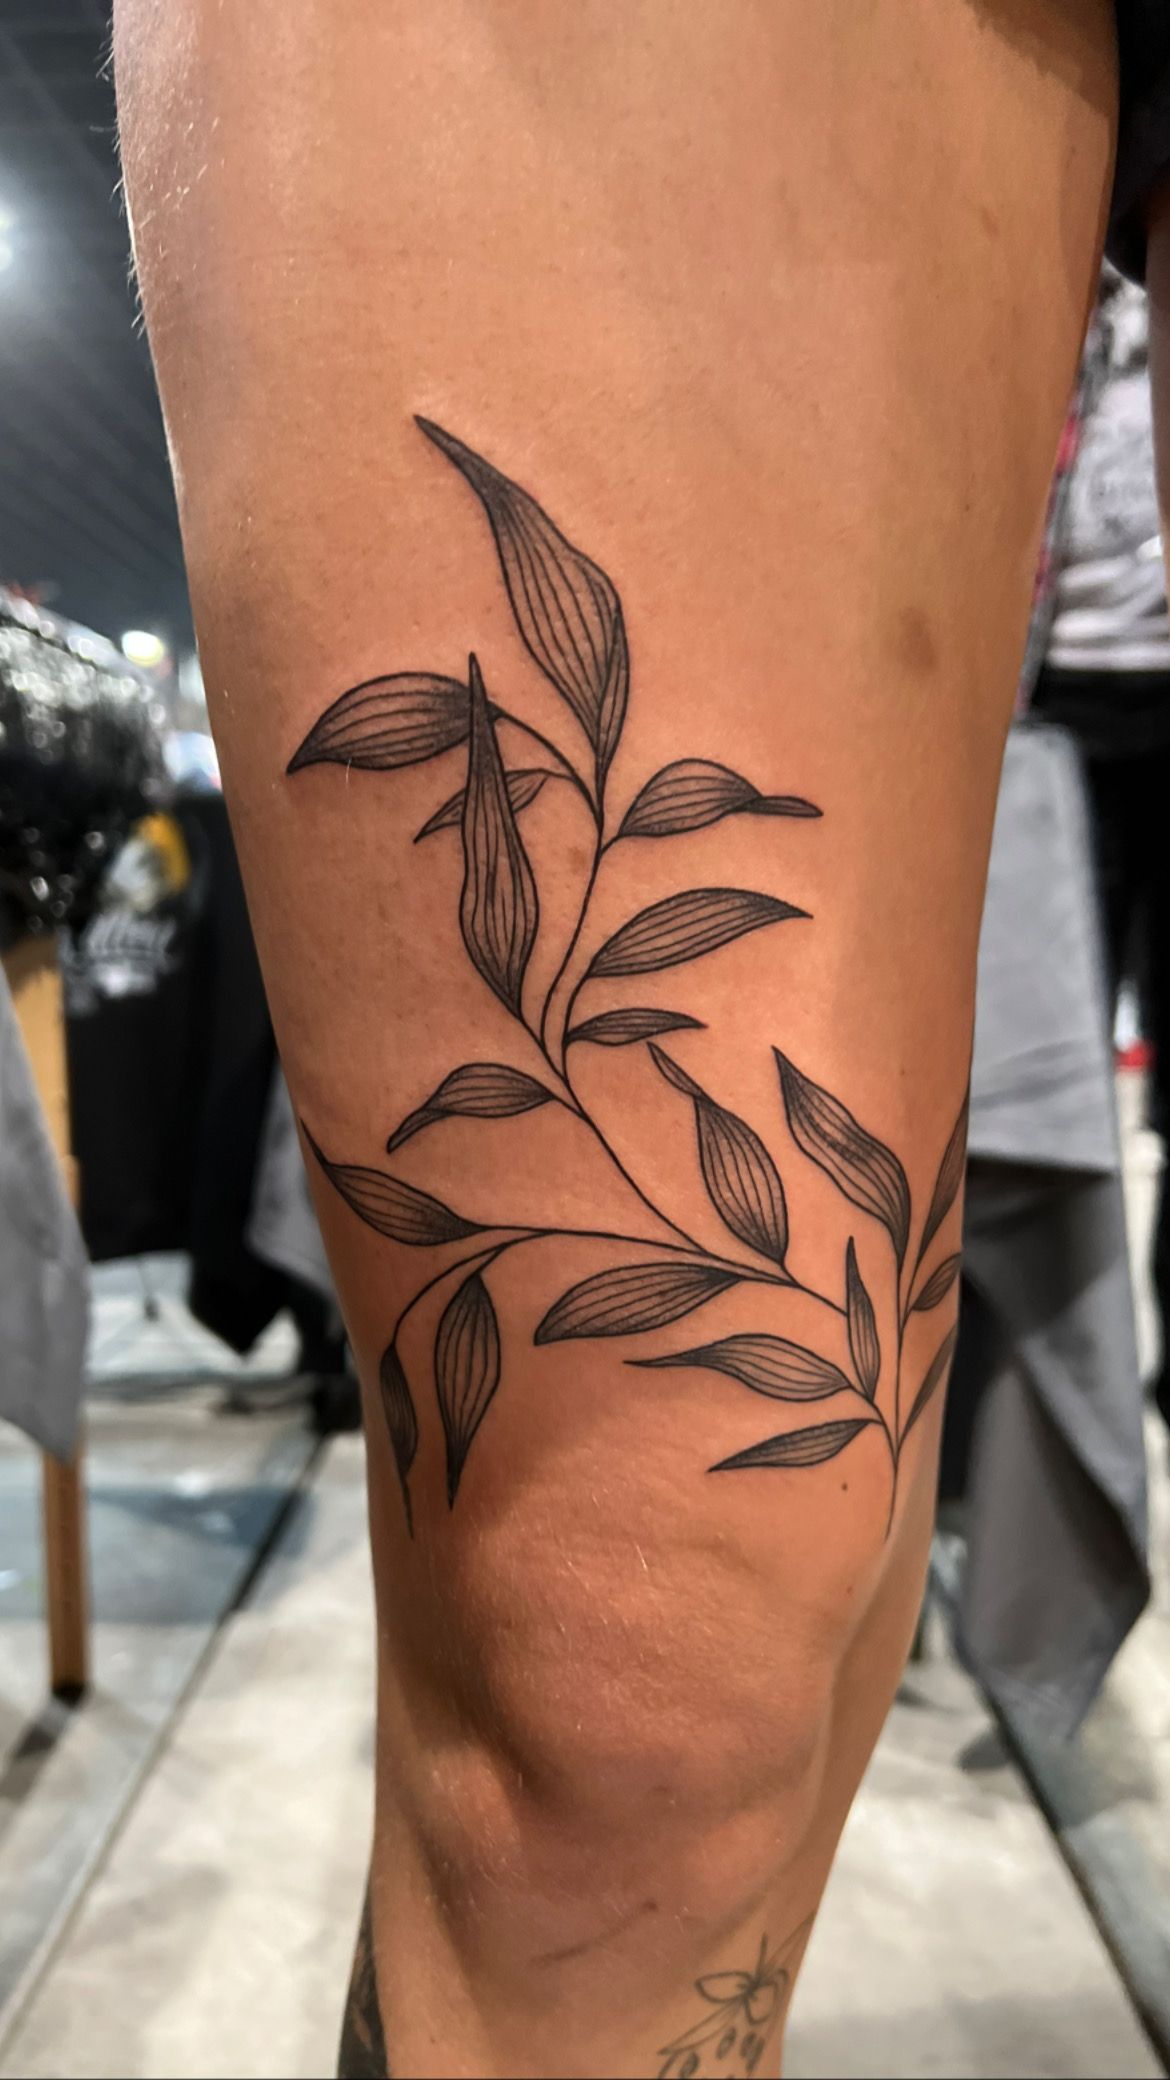 Tattoo Artist Designs Whimsical Botanical Tattoos - PlayJunkie